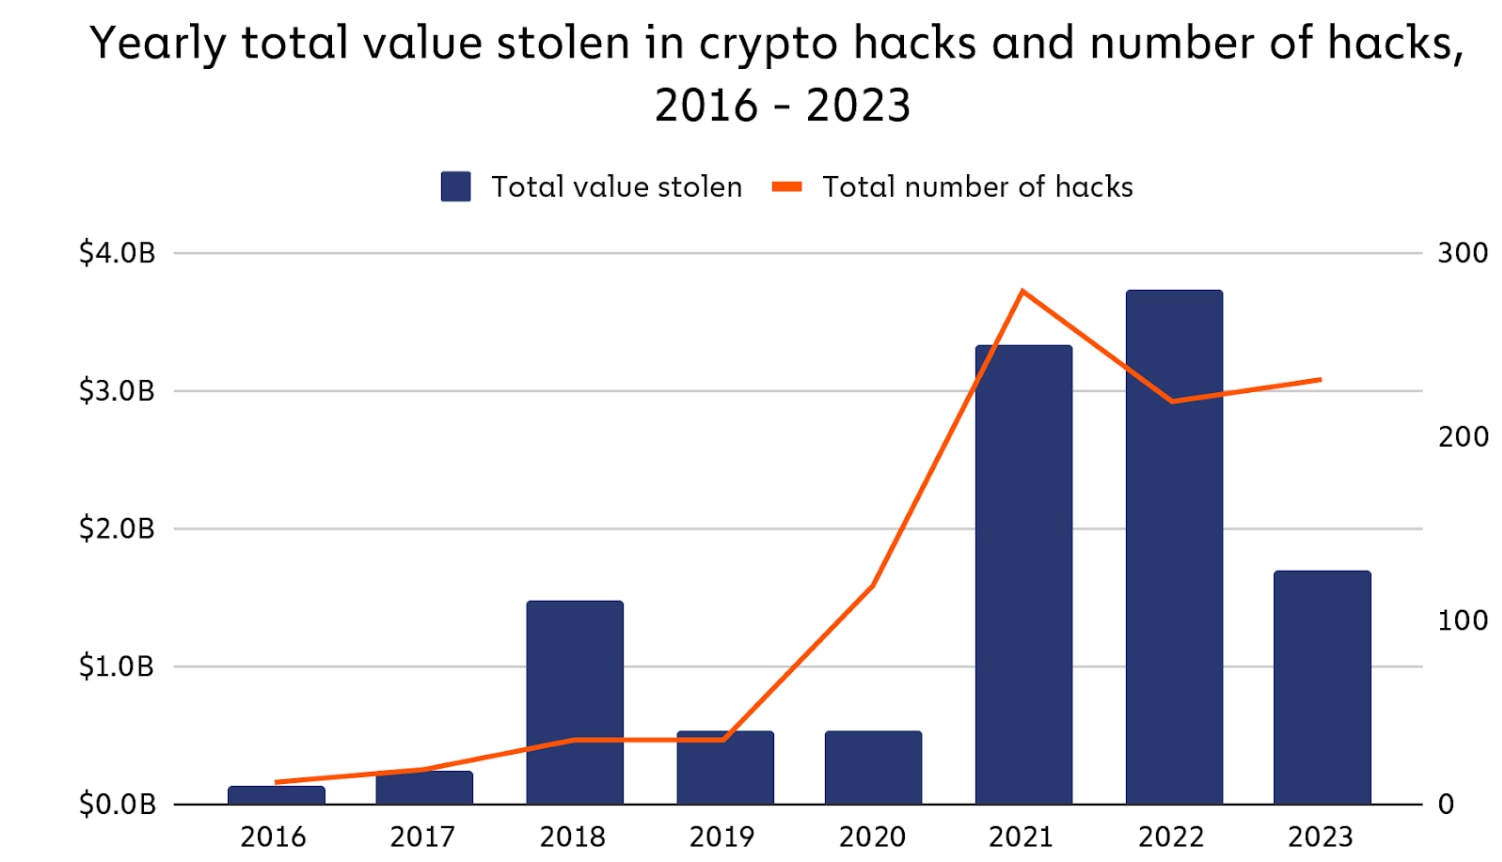 Schäden durch Hacks gehen im Jahr 2023 deutlich zurück